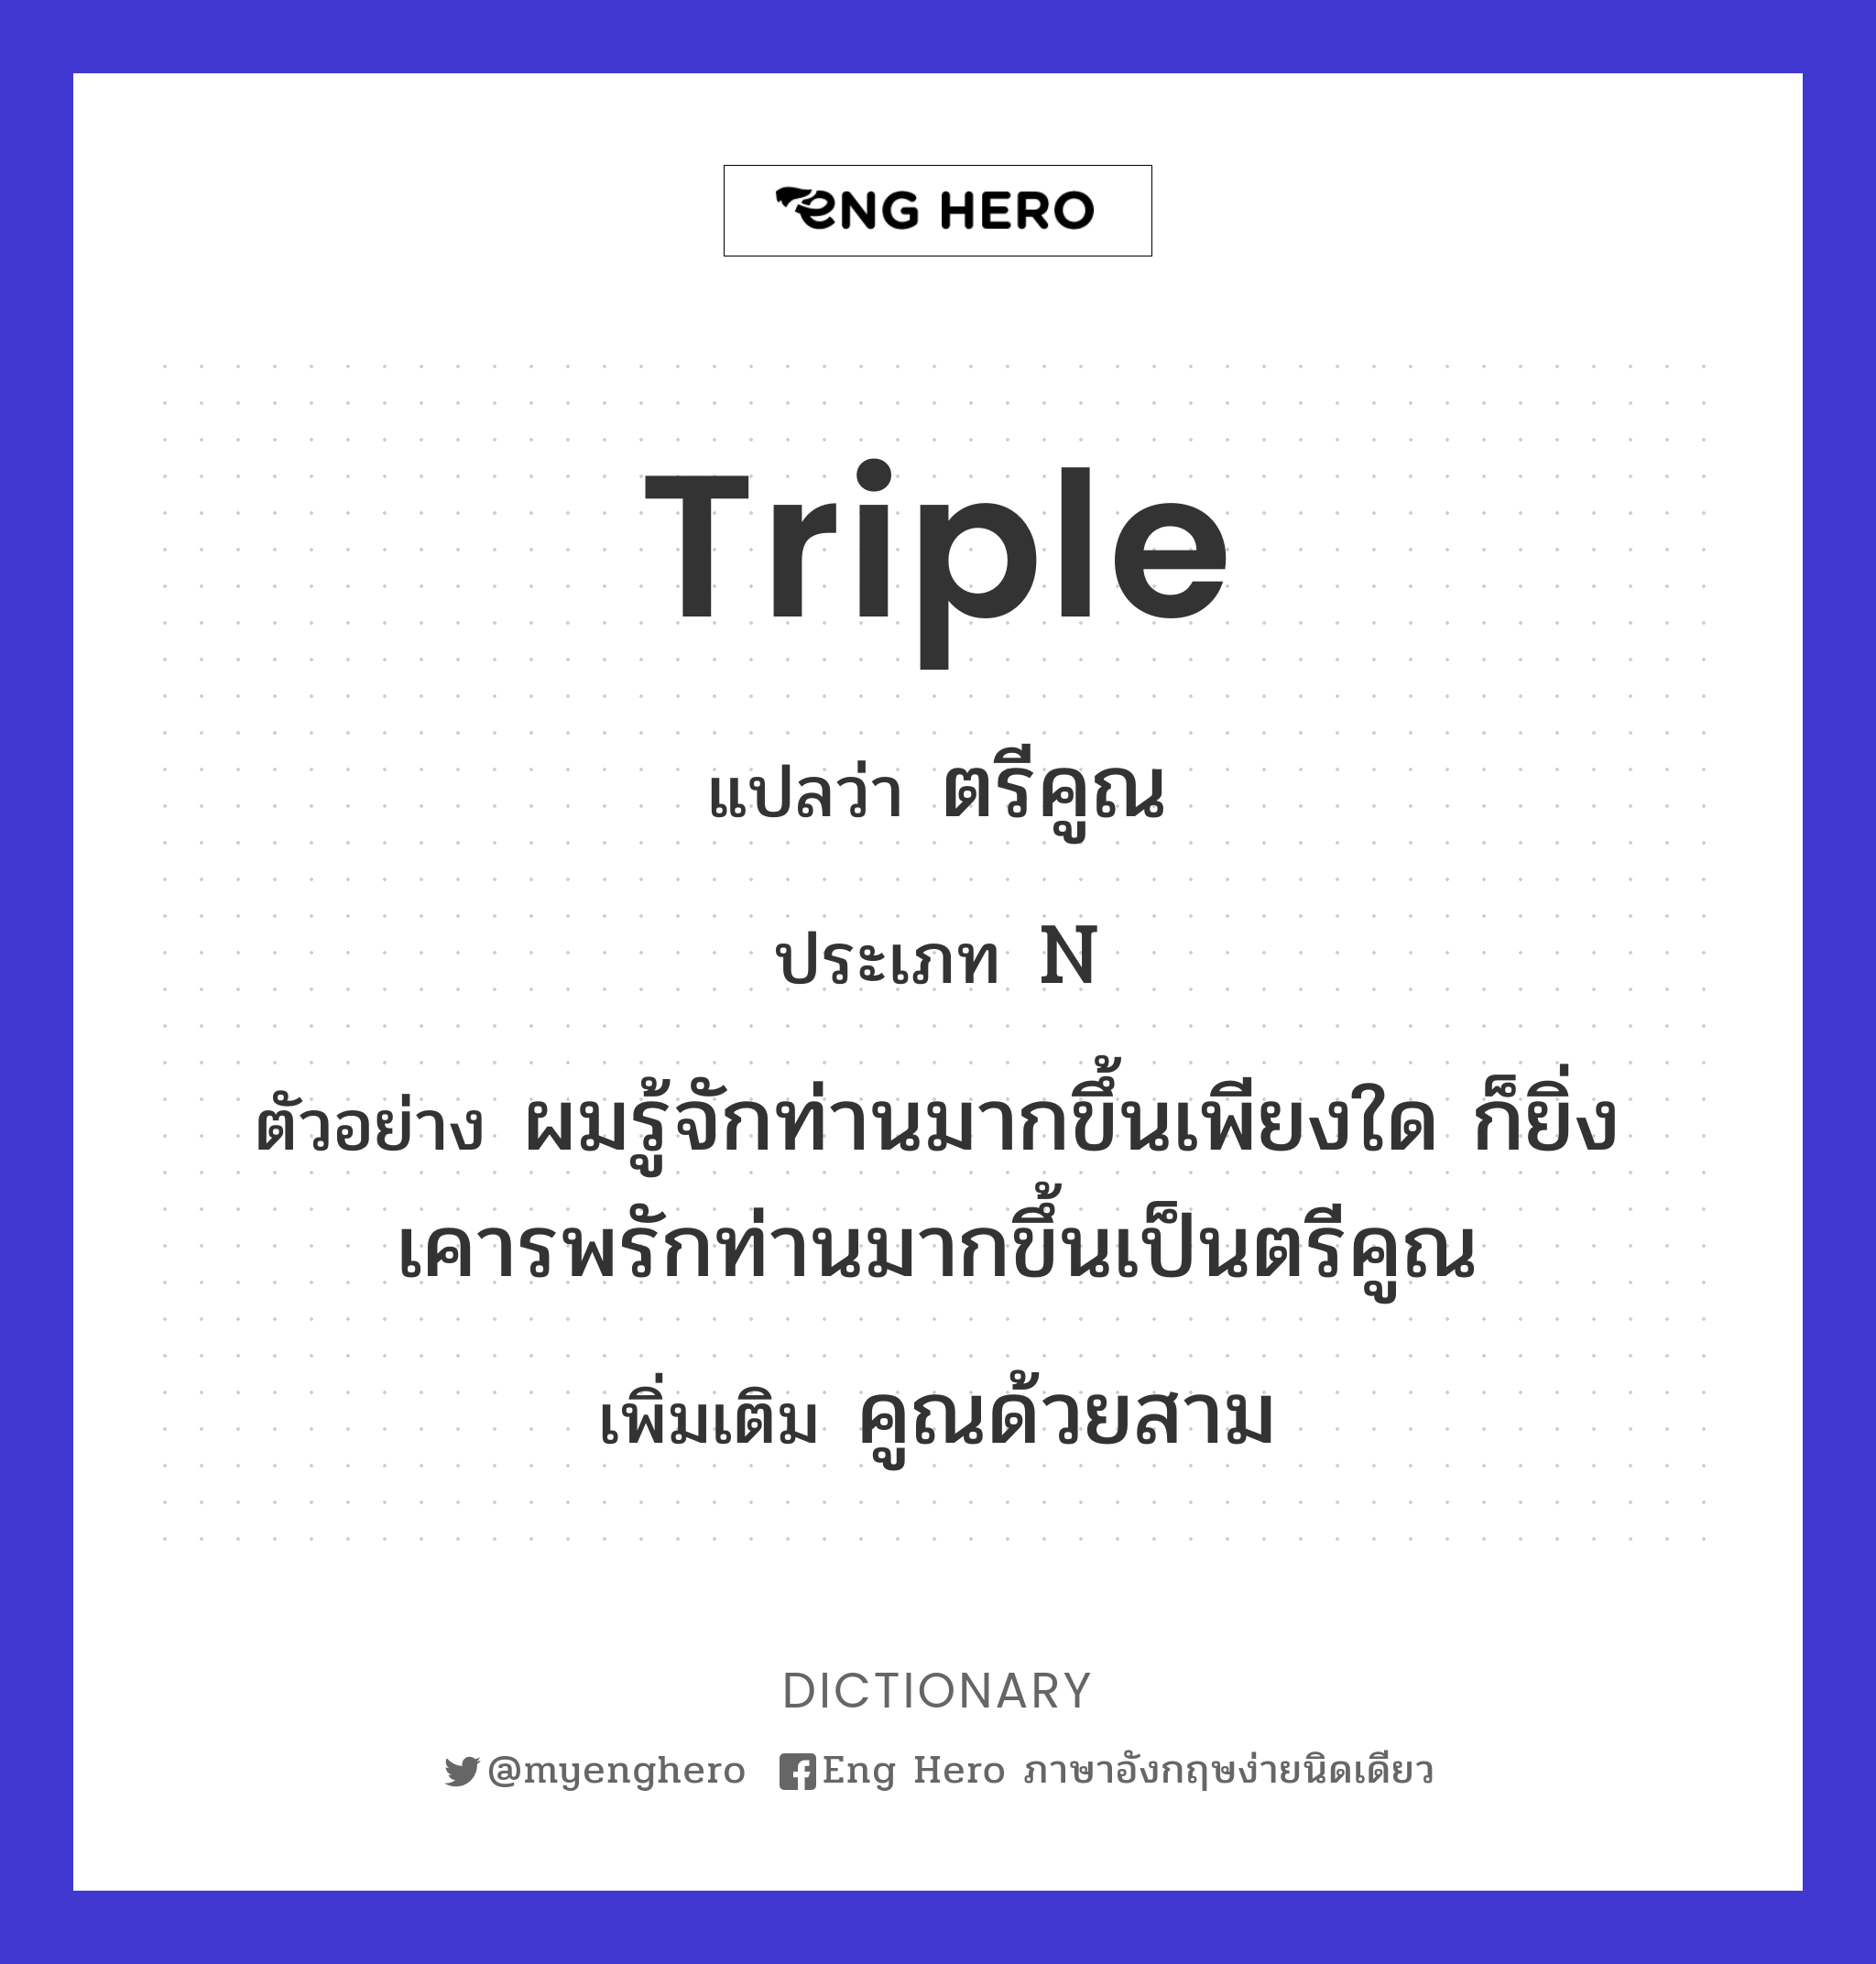 triple